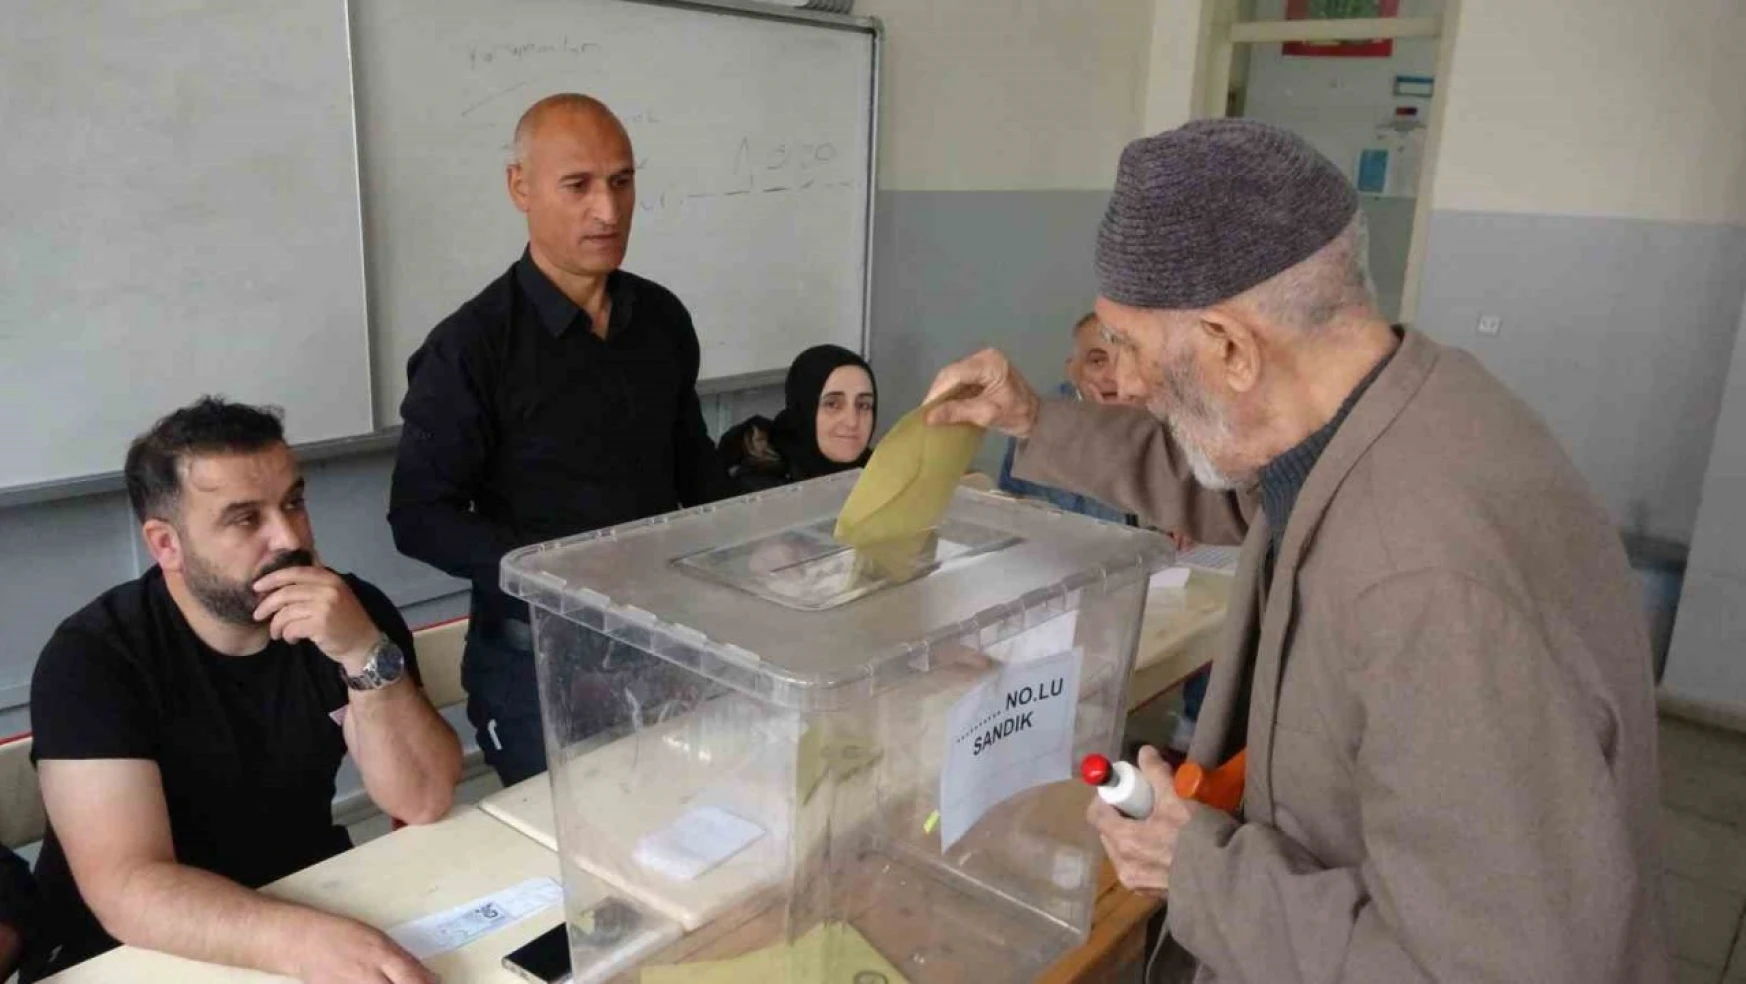 Bingöl'de Cumhurbaşkanlığı ikinci tur seçimi için oy kullanımı başladı